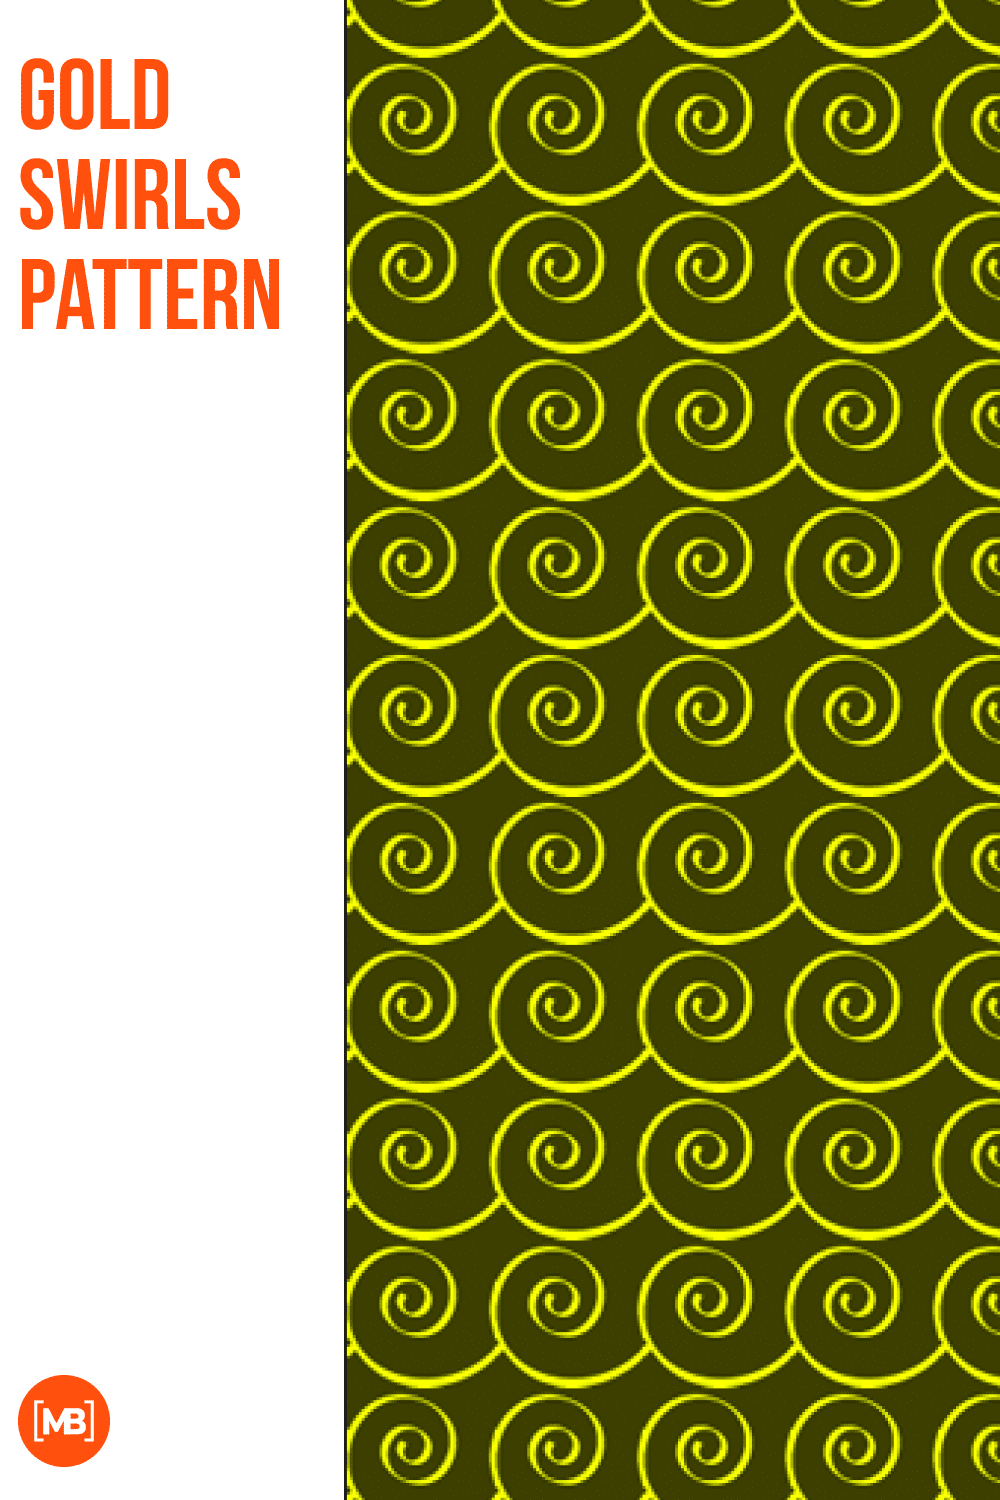 Gold swirls pattern.